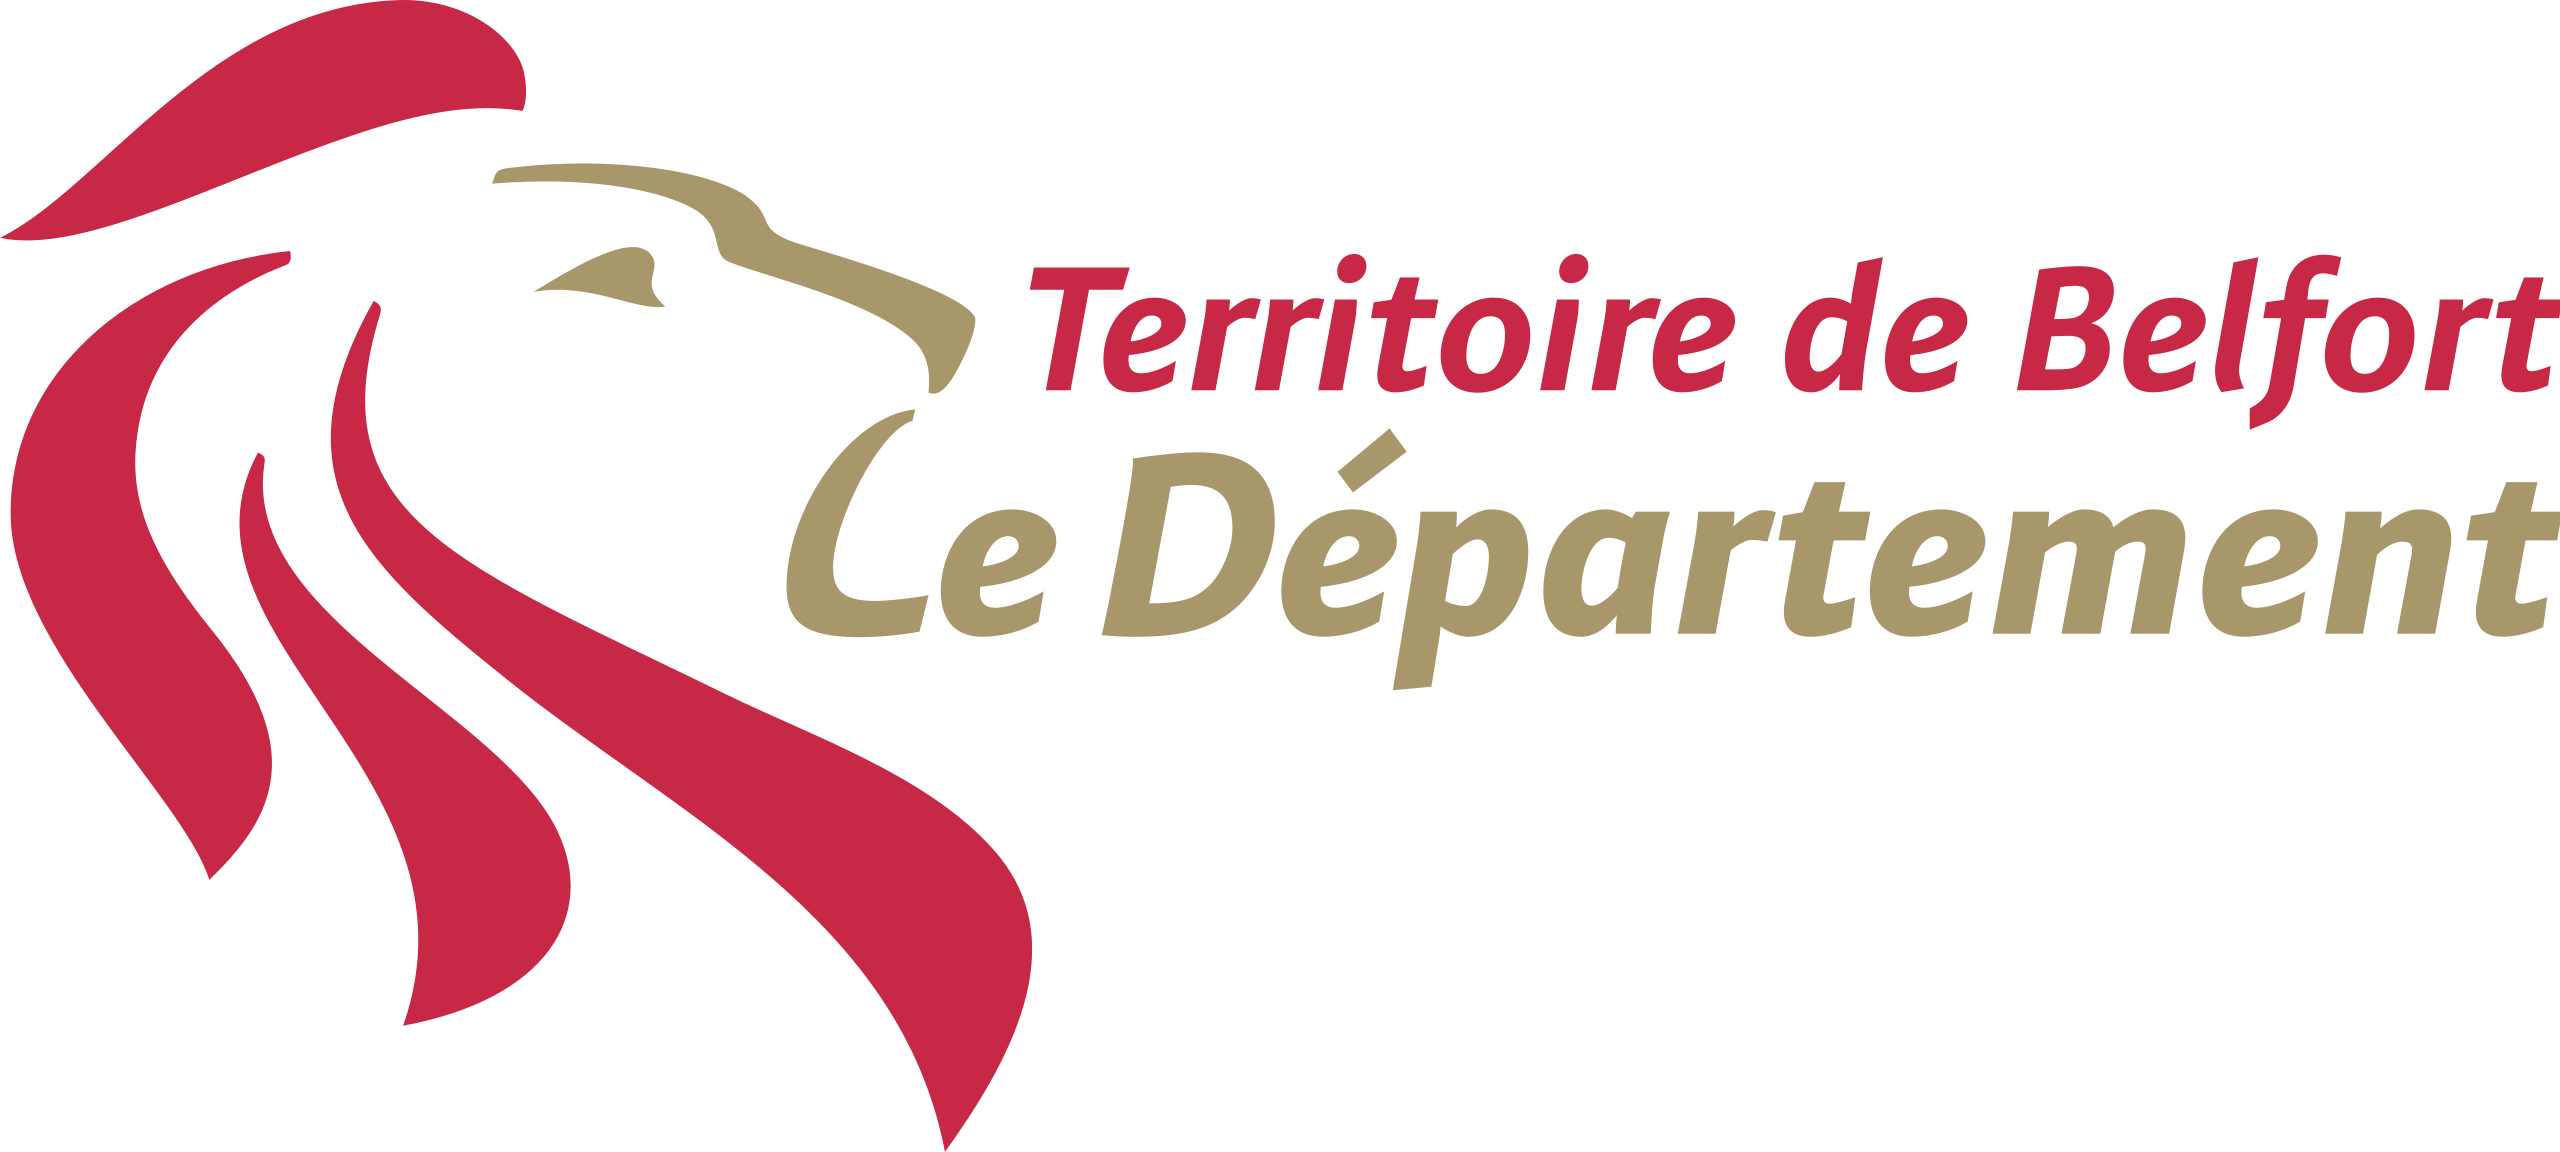 Logo webmaster - Territoire de Belfort